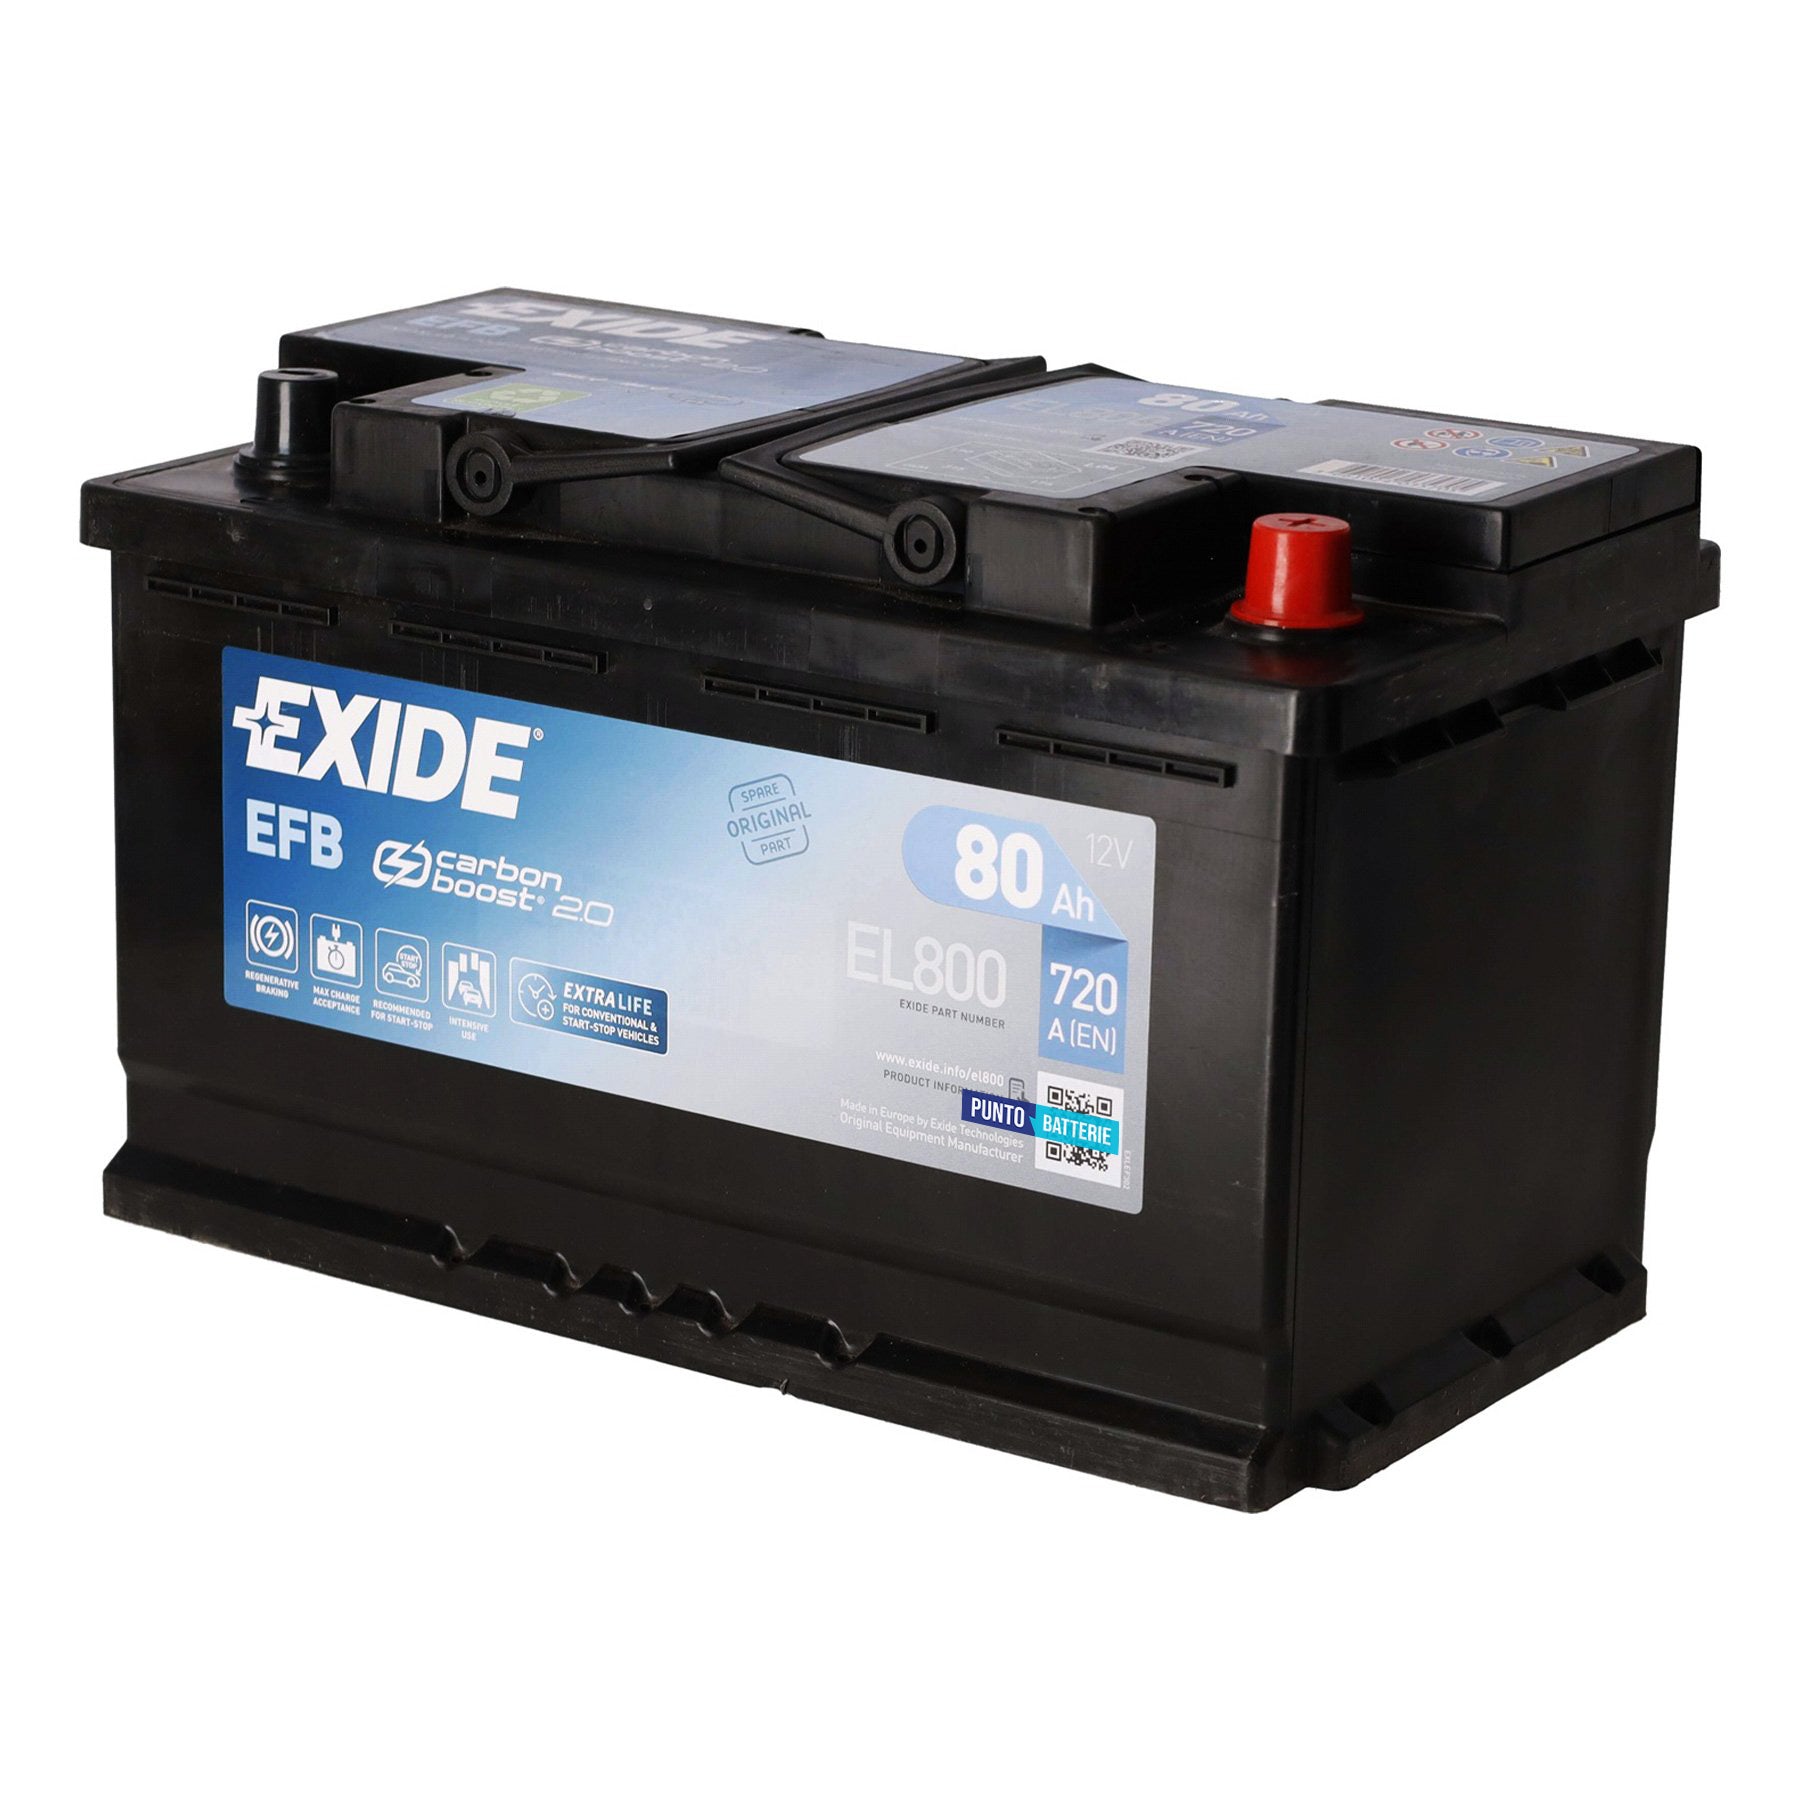 Batteria originale Exide EFB EL800, dimensioni 315 x 175 x 190, polo positivo a destra, 12 volt, 80 amperora, 800 ampere, EFB. Batteria per auto e veicoli leggeri con start e stop.